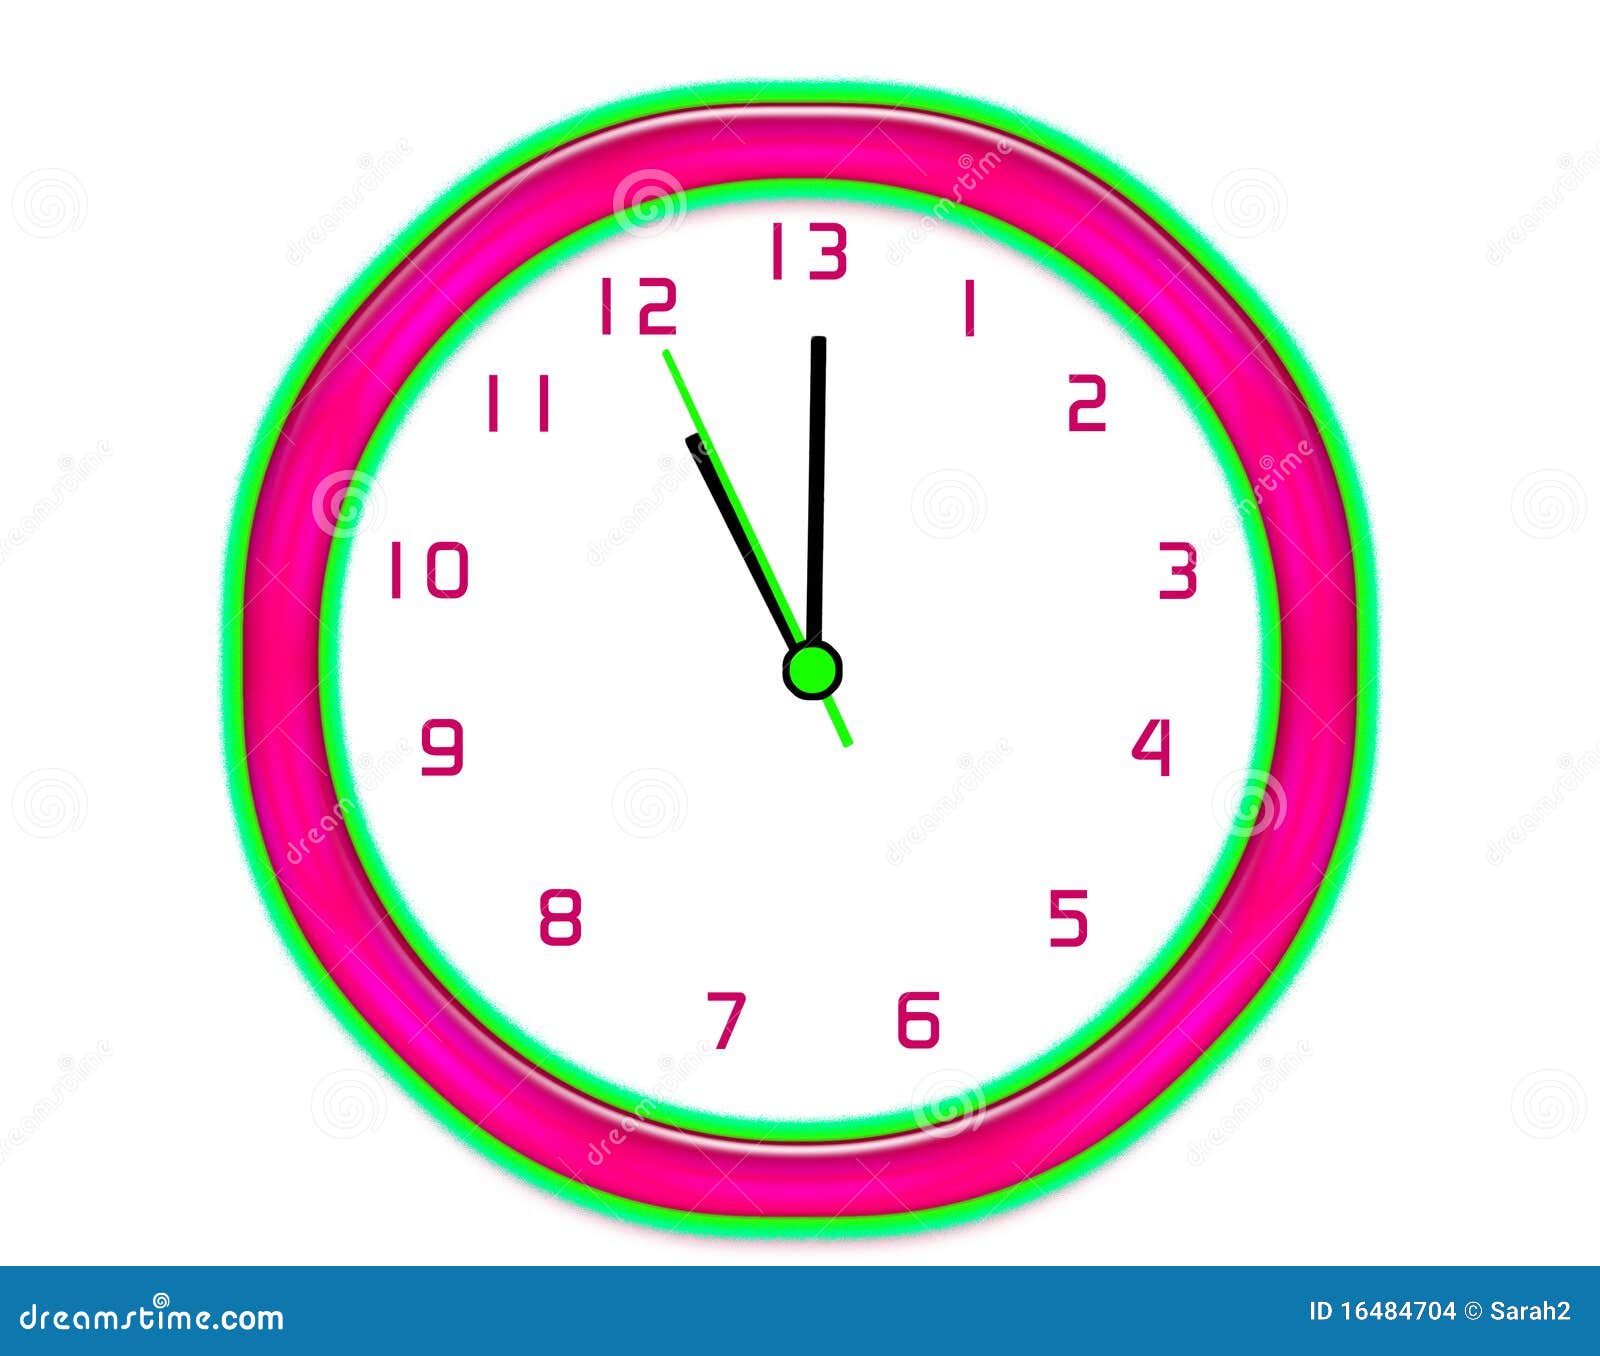 13 часов 35 минут. Часы 13 часов. Часы 13:18. Часы 13 часов иллюстрация штока. Часы с тринадцатым часом.